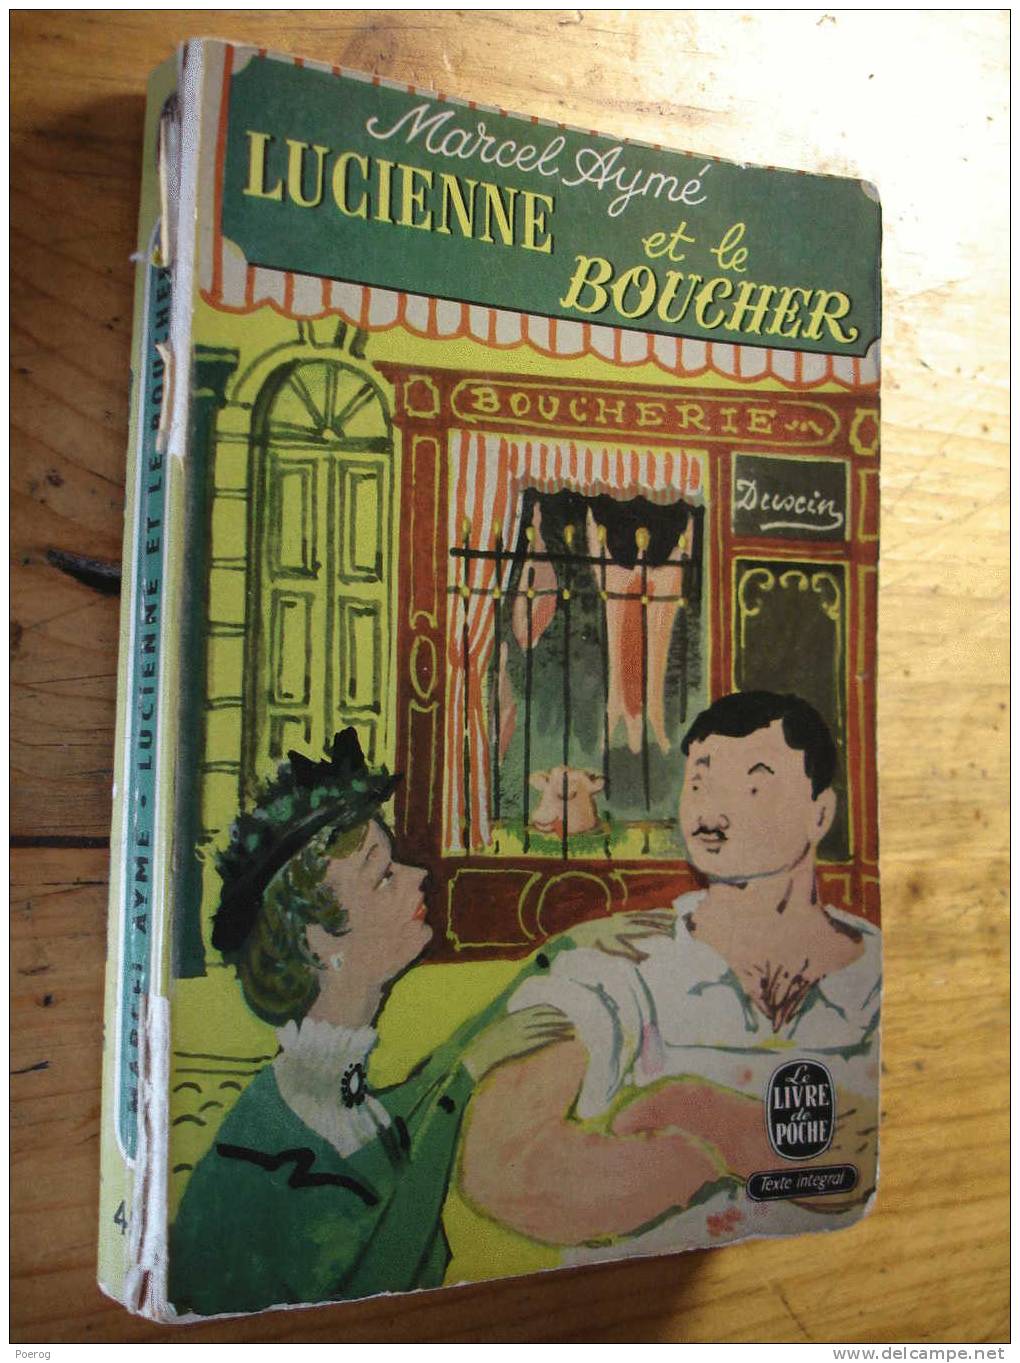 MARCEL AYME - LUCIENNE ET LE BOUCHER - LE LIVRE DE POCHE N°451- 1964 - Auteurs Français